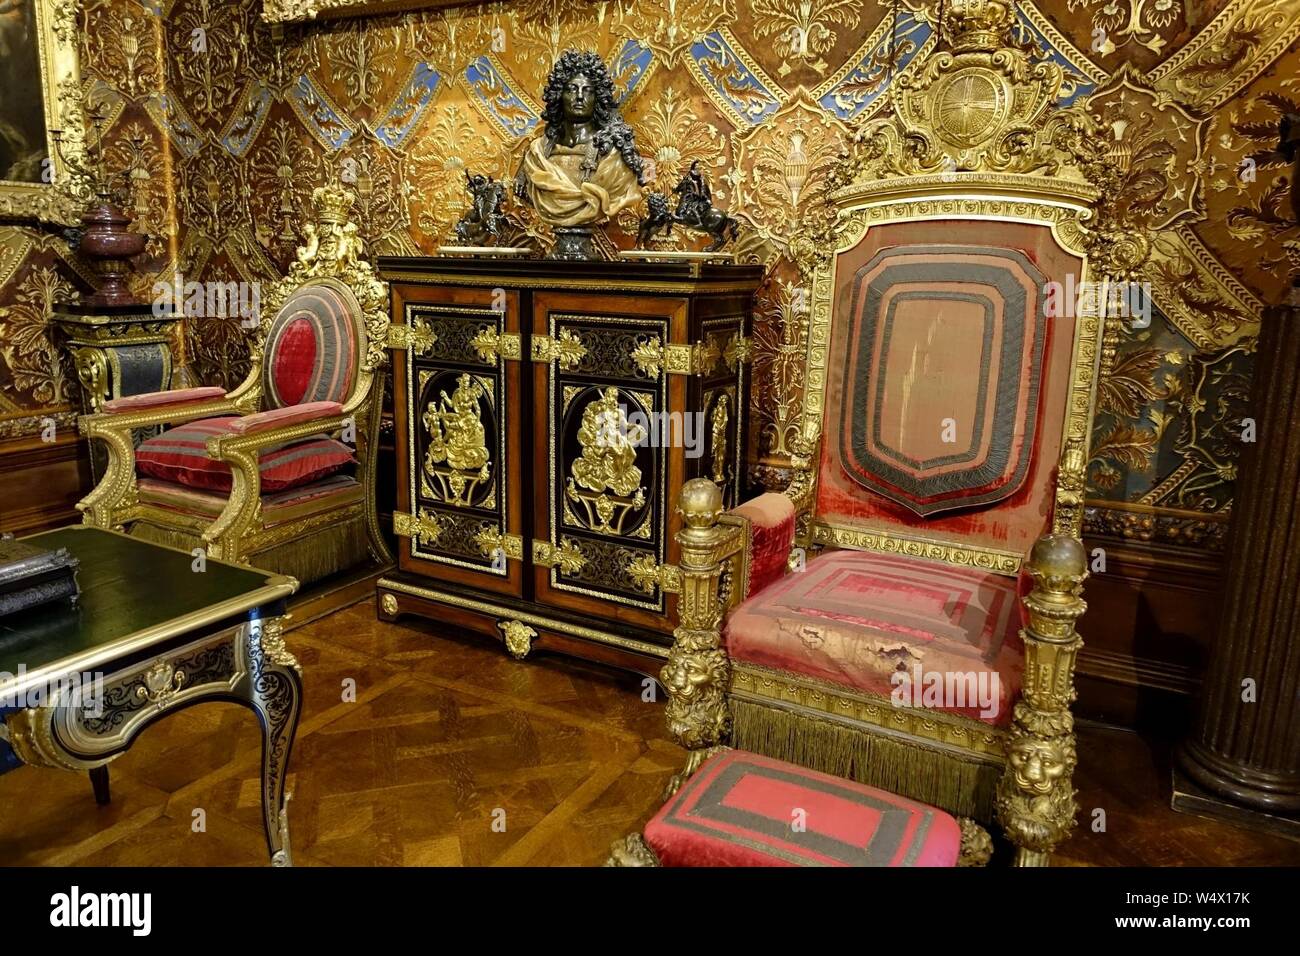 Krönung Stühle der Königin Adelaide und William IV-Musik, Chatsworth House - Derbyshire, England - Stockfoto